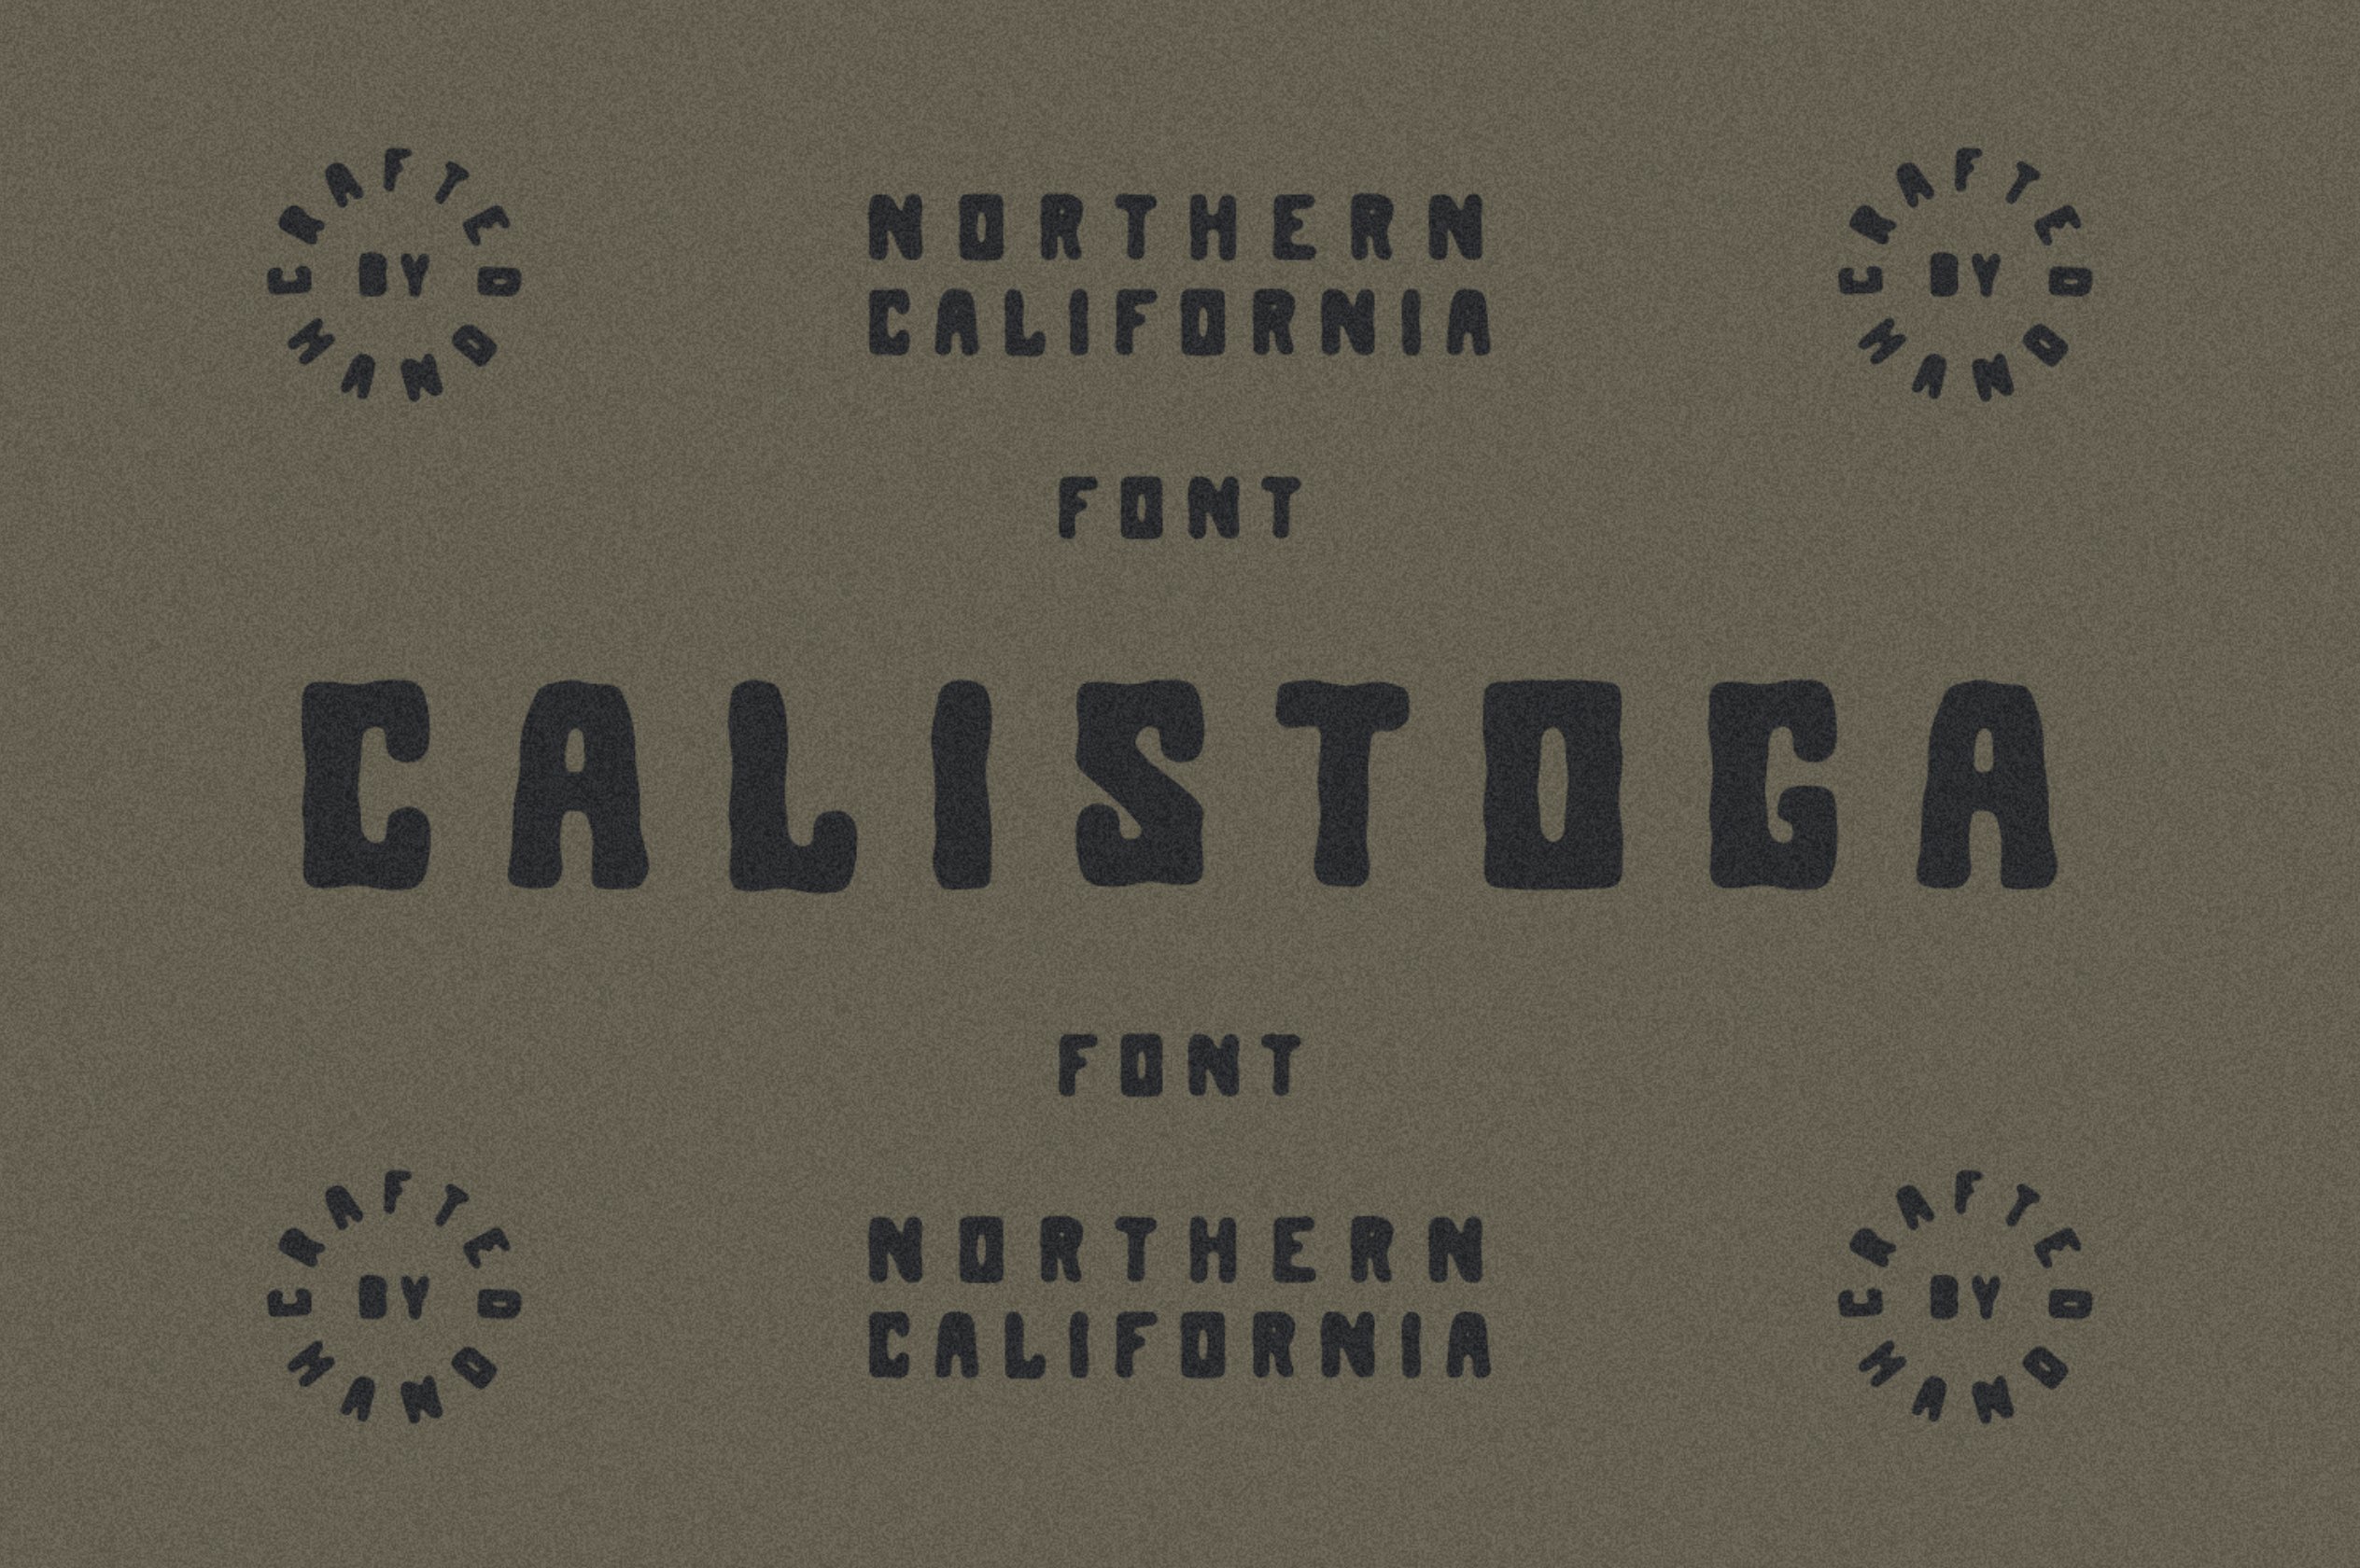 Calistoga cover image.